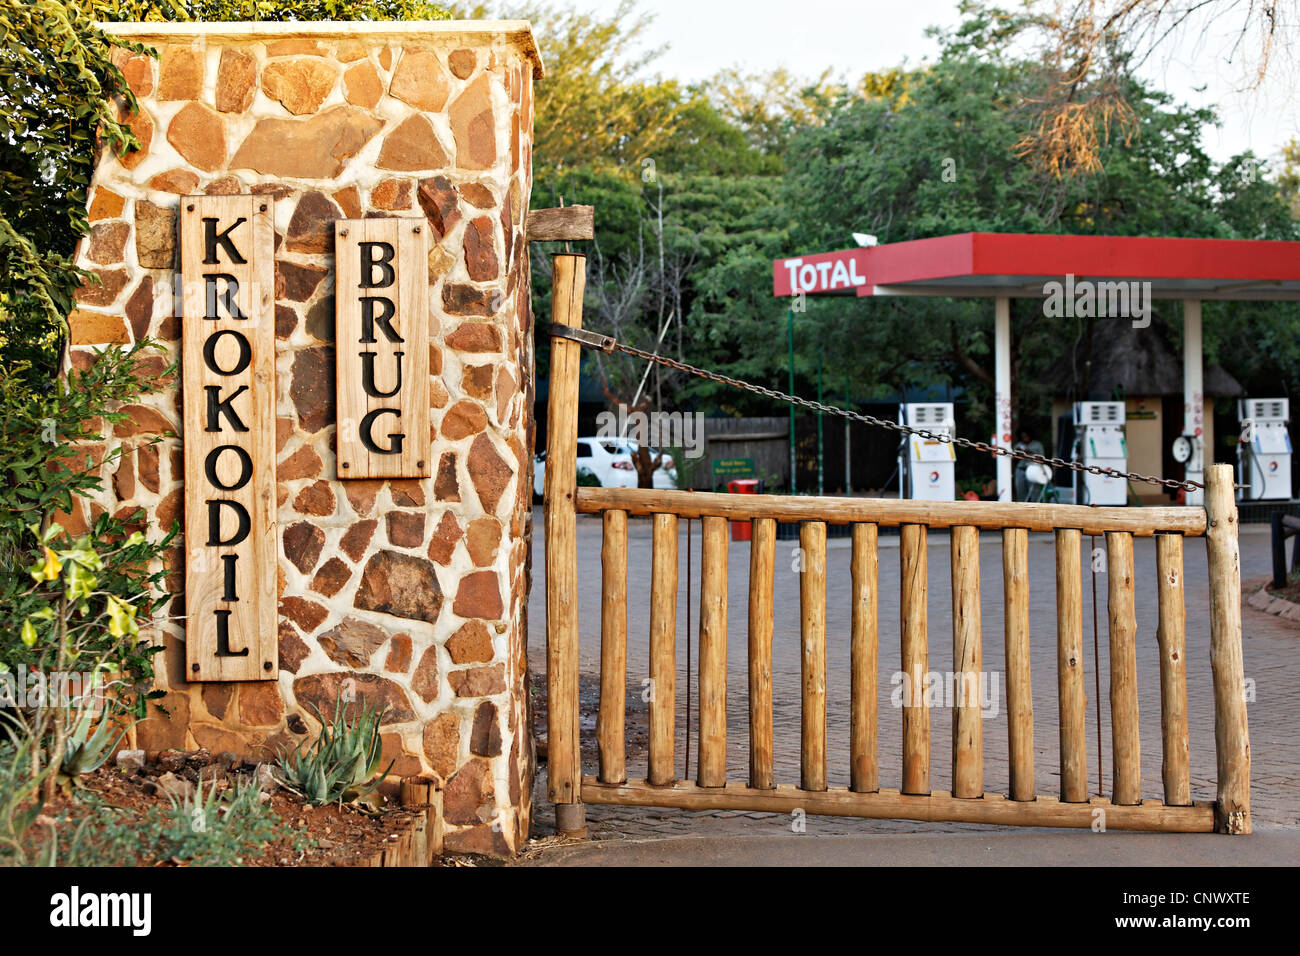 Puerta de entrada al campamento de puente del cocodrilo, el Parque Nacional Kruger, Sudáfrica Foto de stock